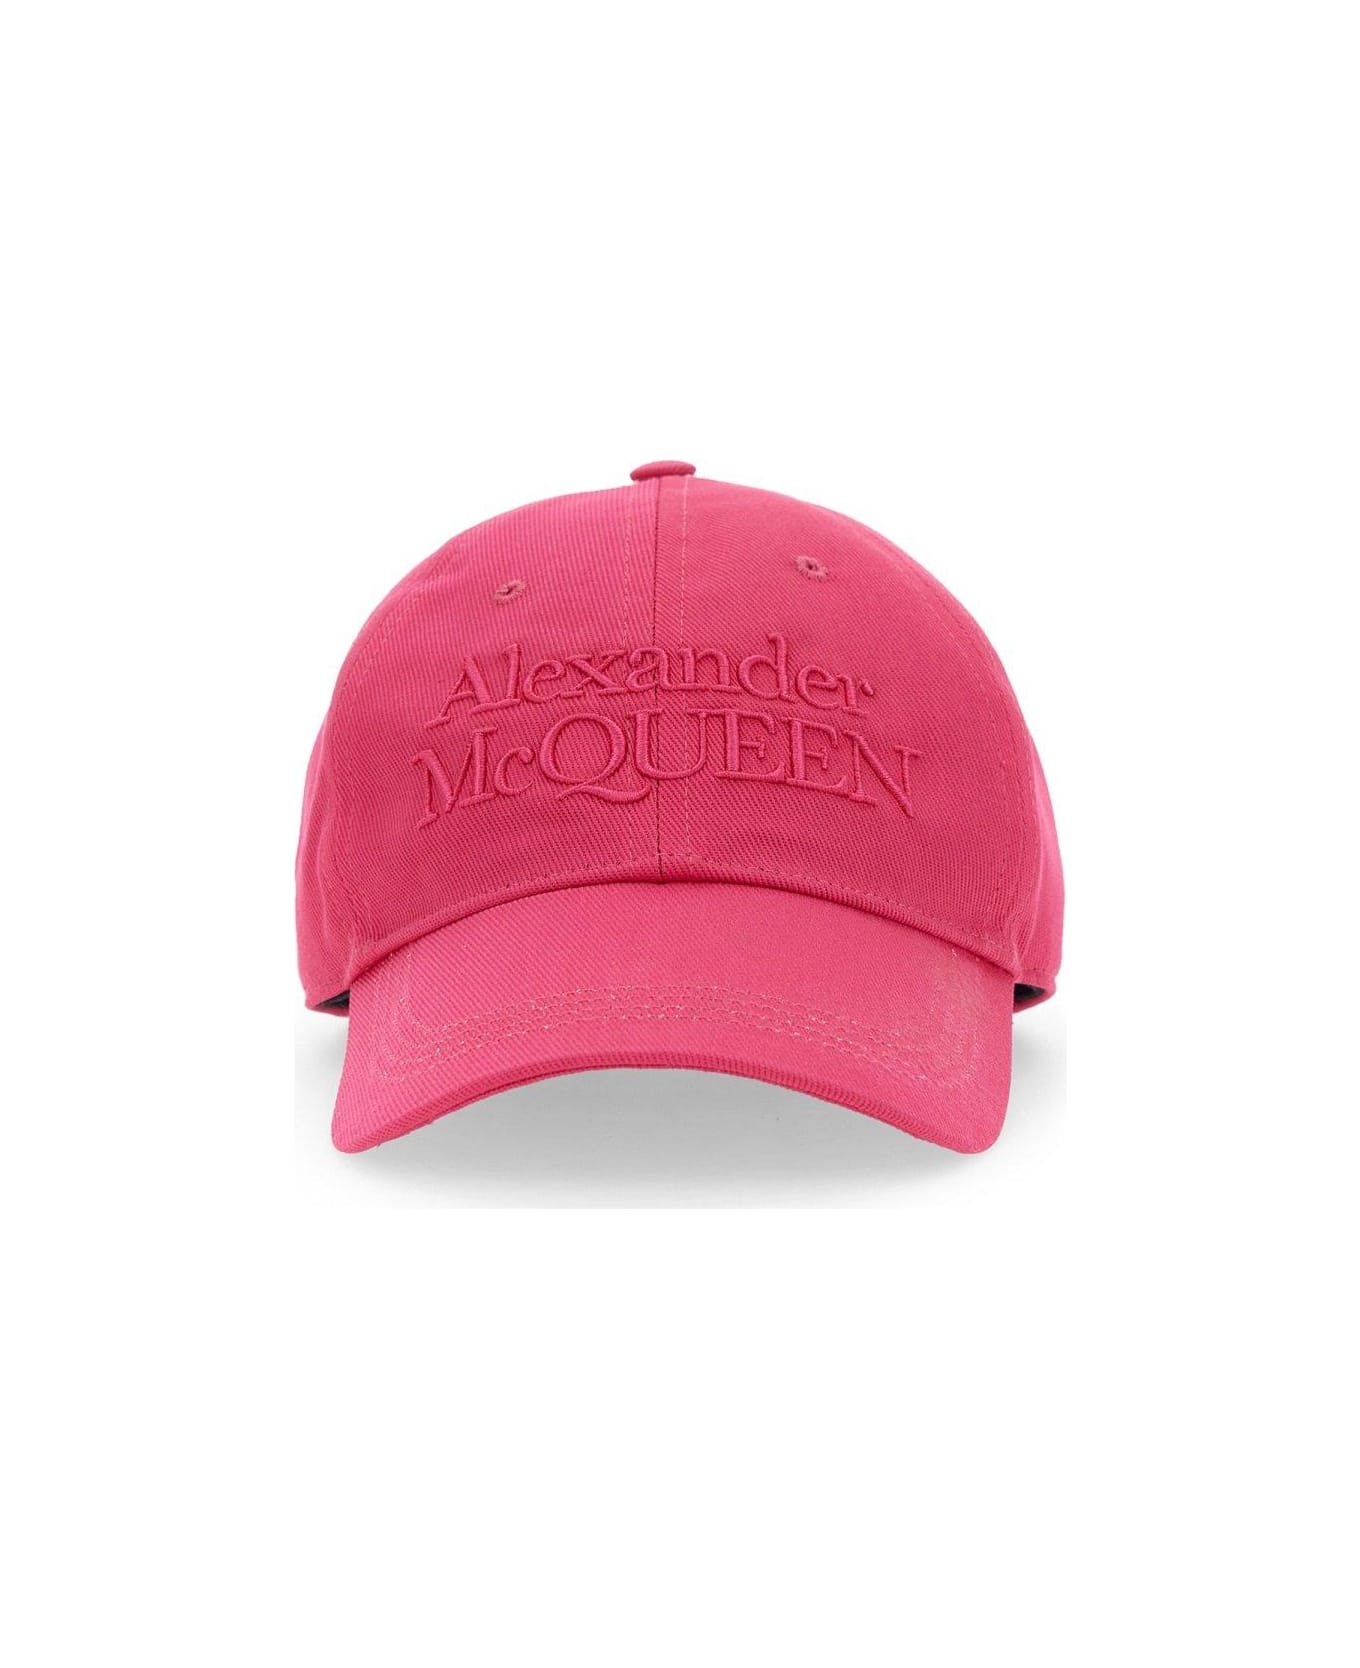 Alexander McQueen Logo Embroidered Baseball Cap - Fuchsia 帽子